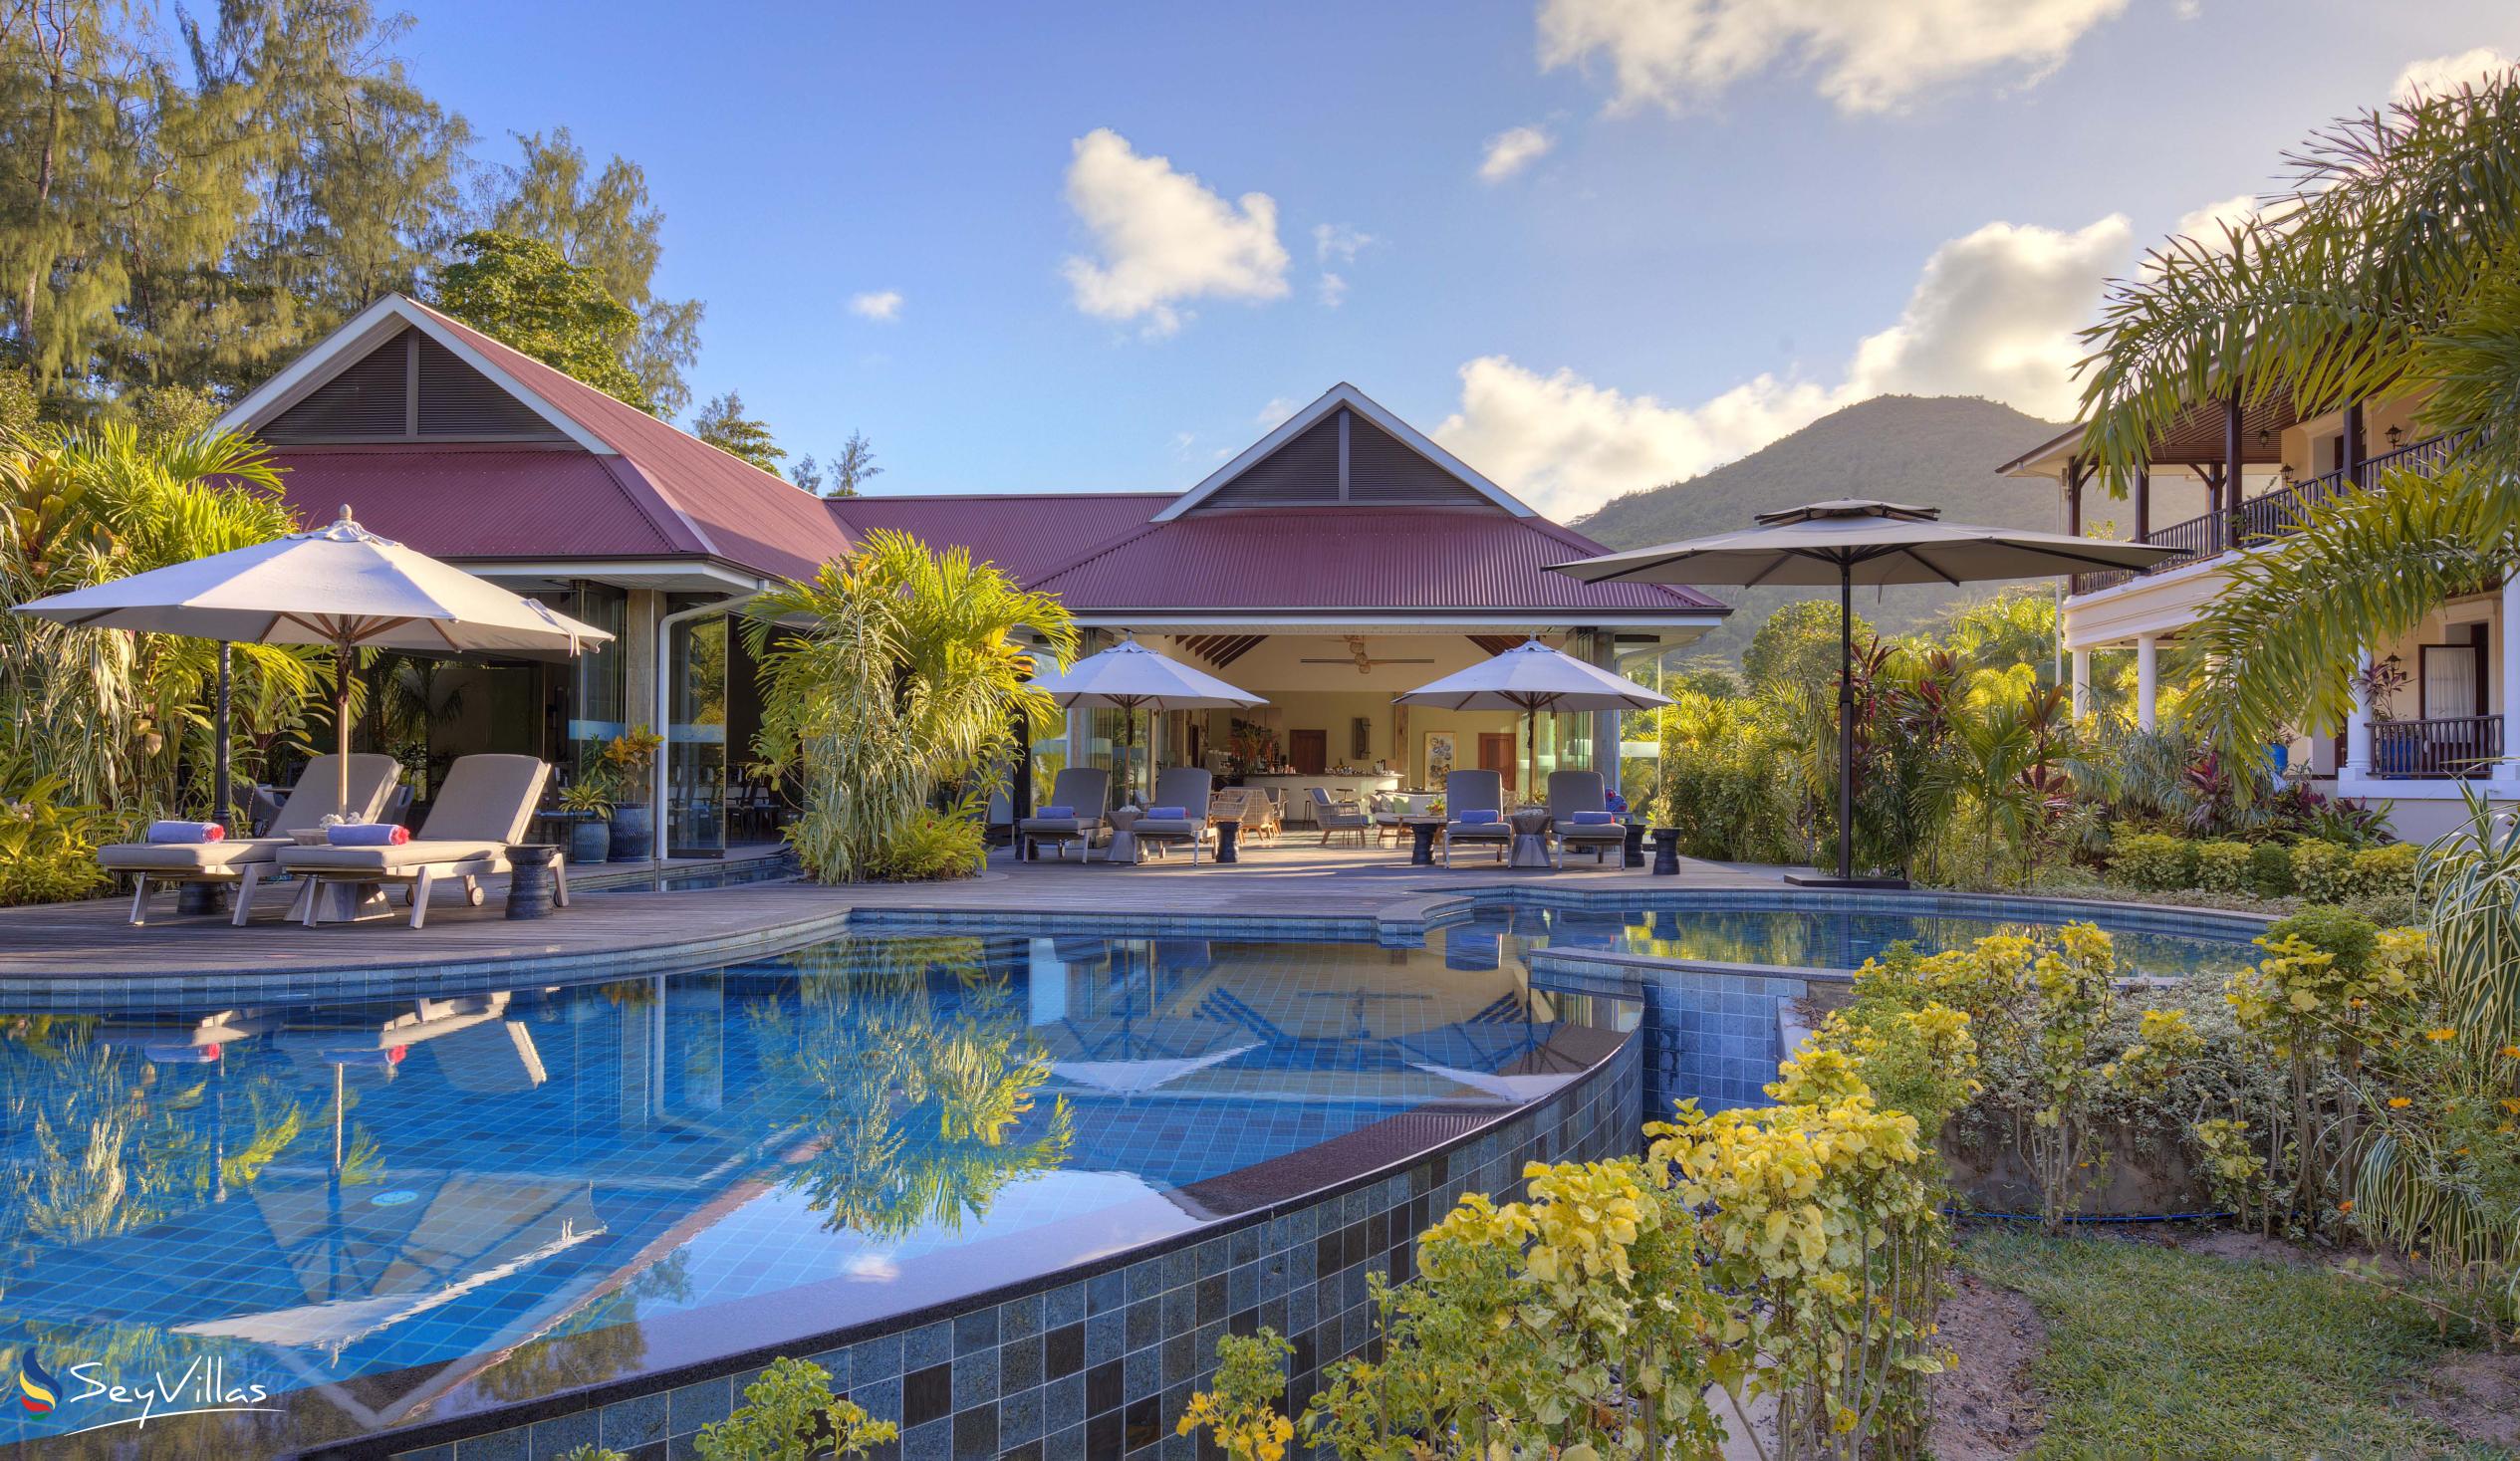 Photo 3: La Cigale Estate - Outdoor area - Praslin (Seychelles)